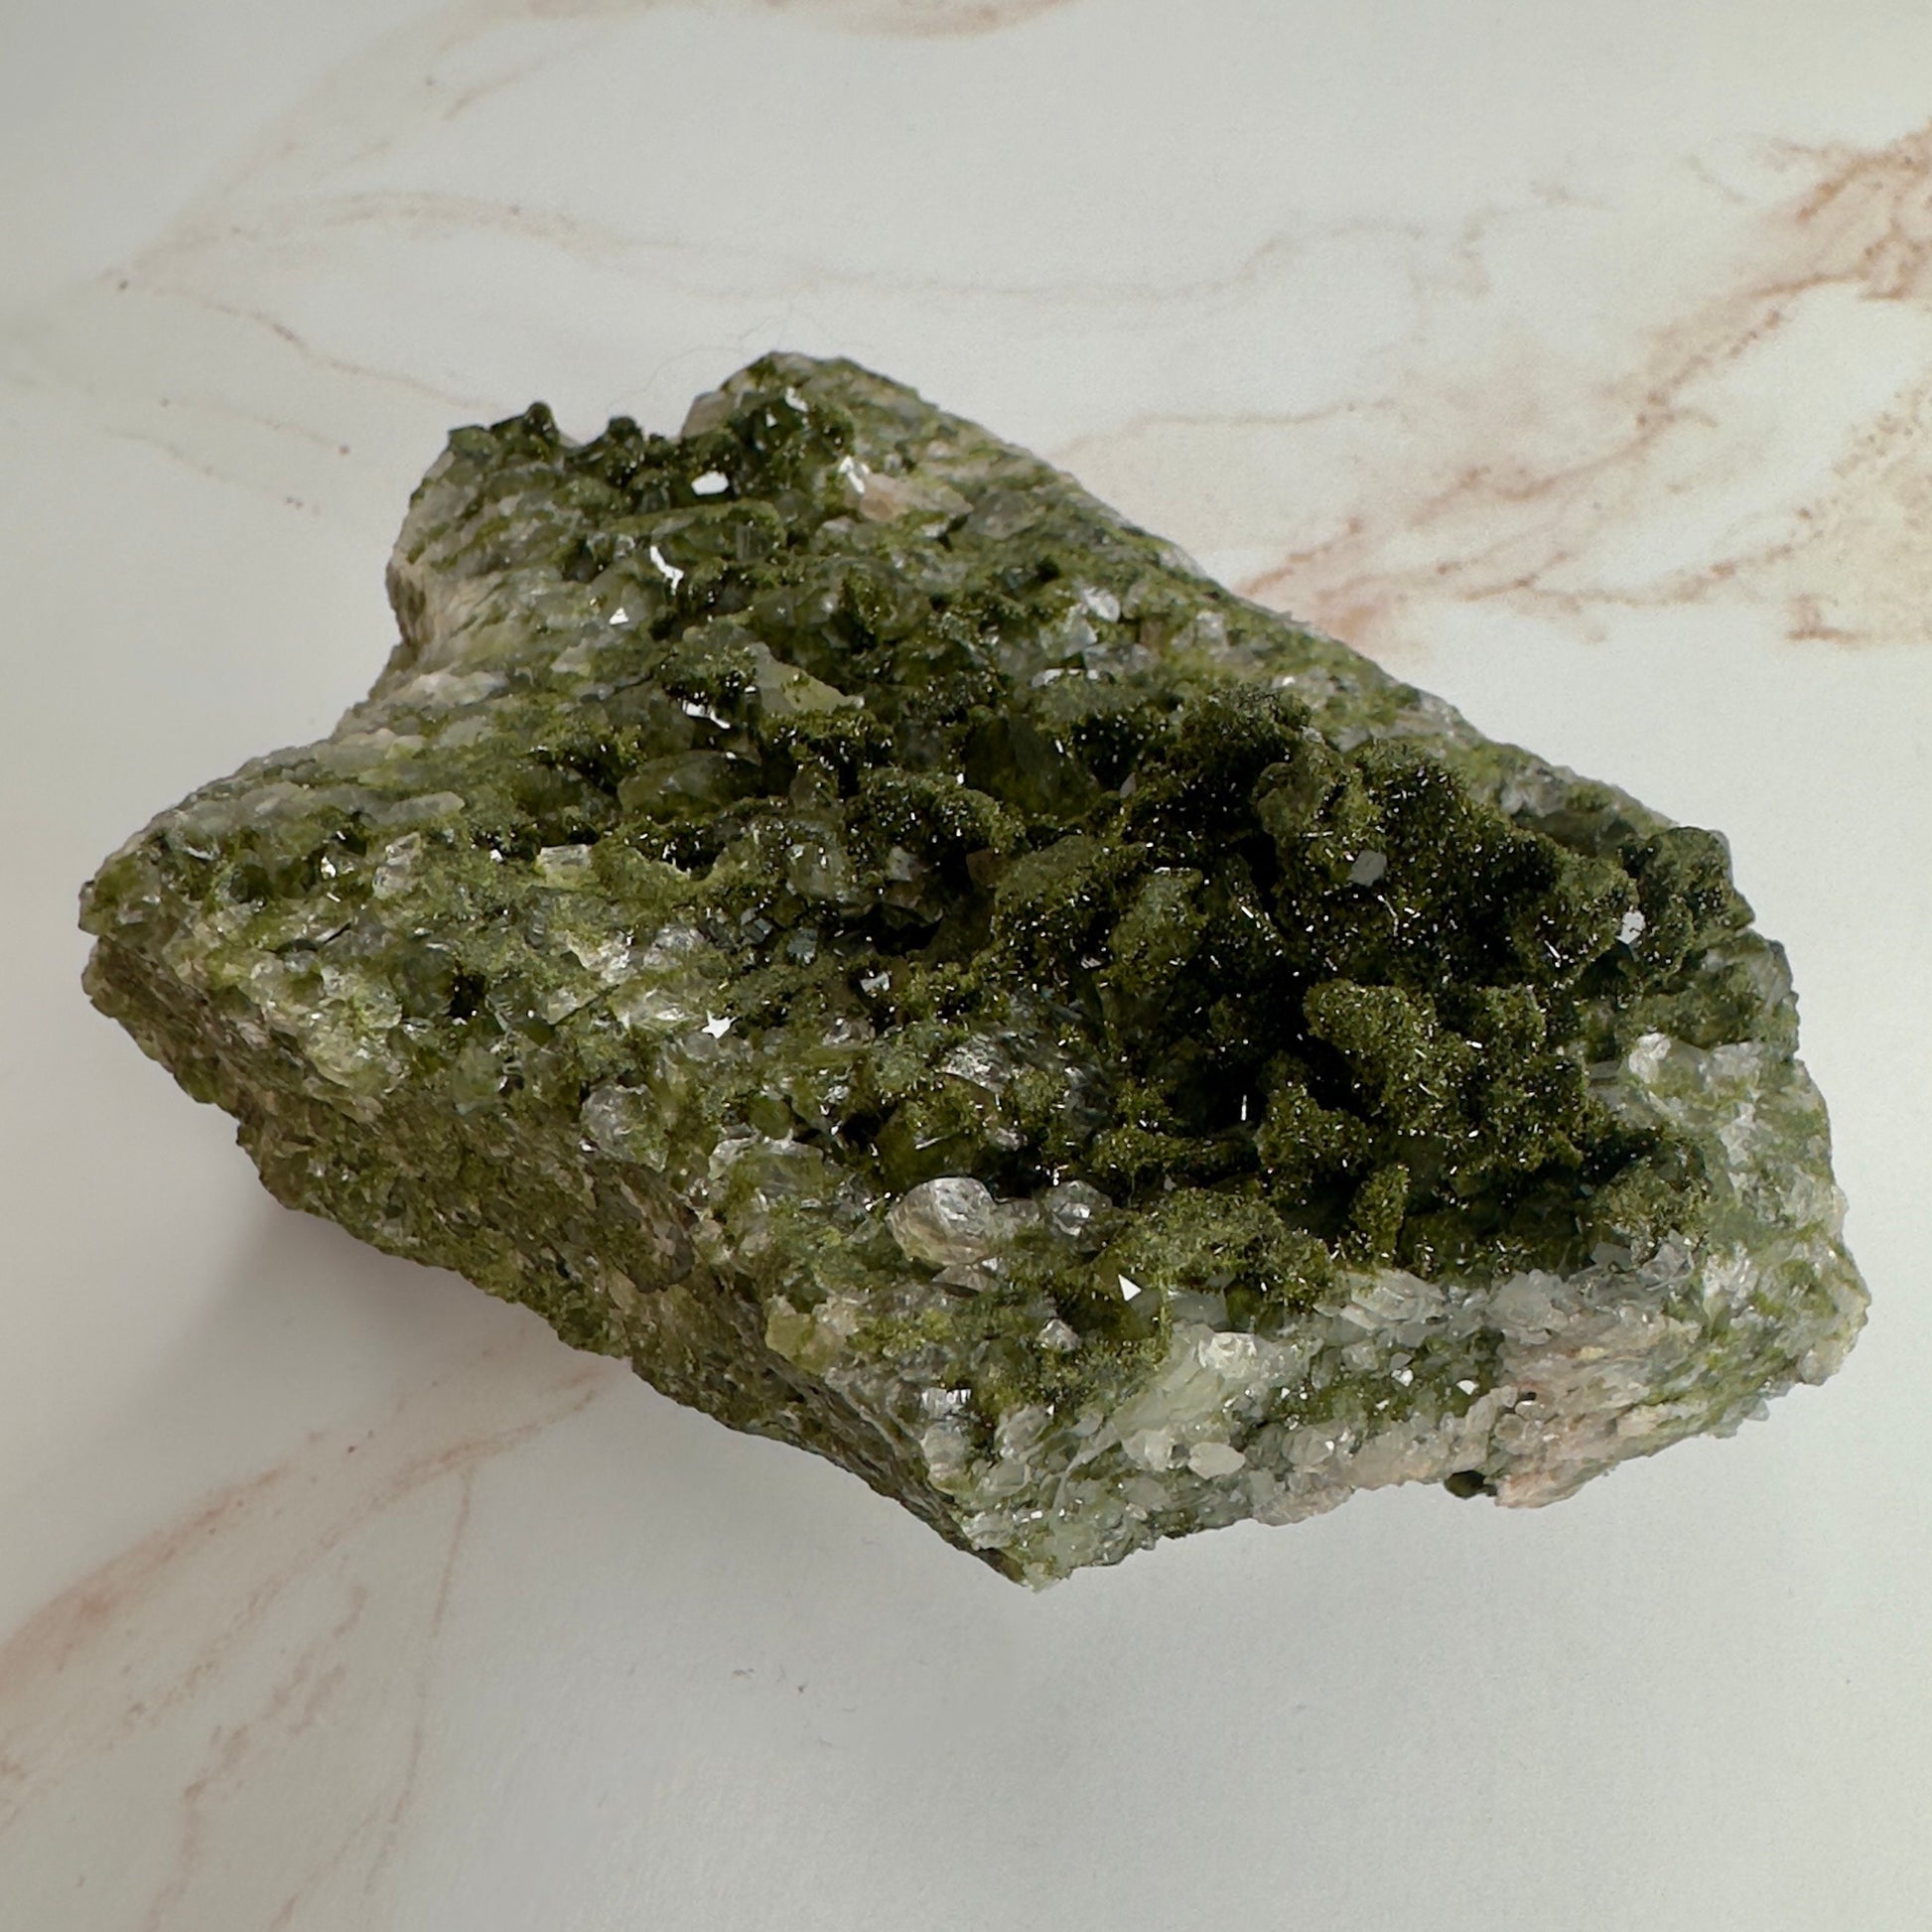 Forest Epidote On Quartz Genuine Dark Green Crystal Cluster Specimen From Turkey | Tucson Gem Show Exclusive